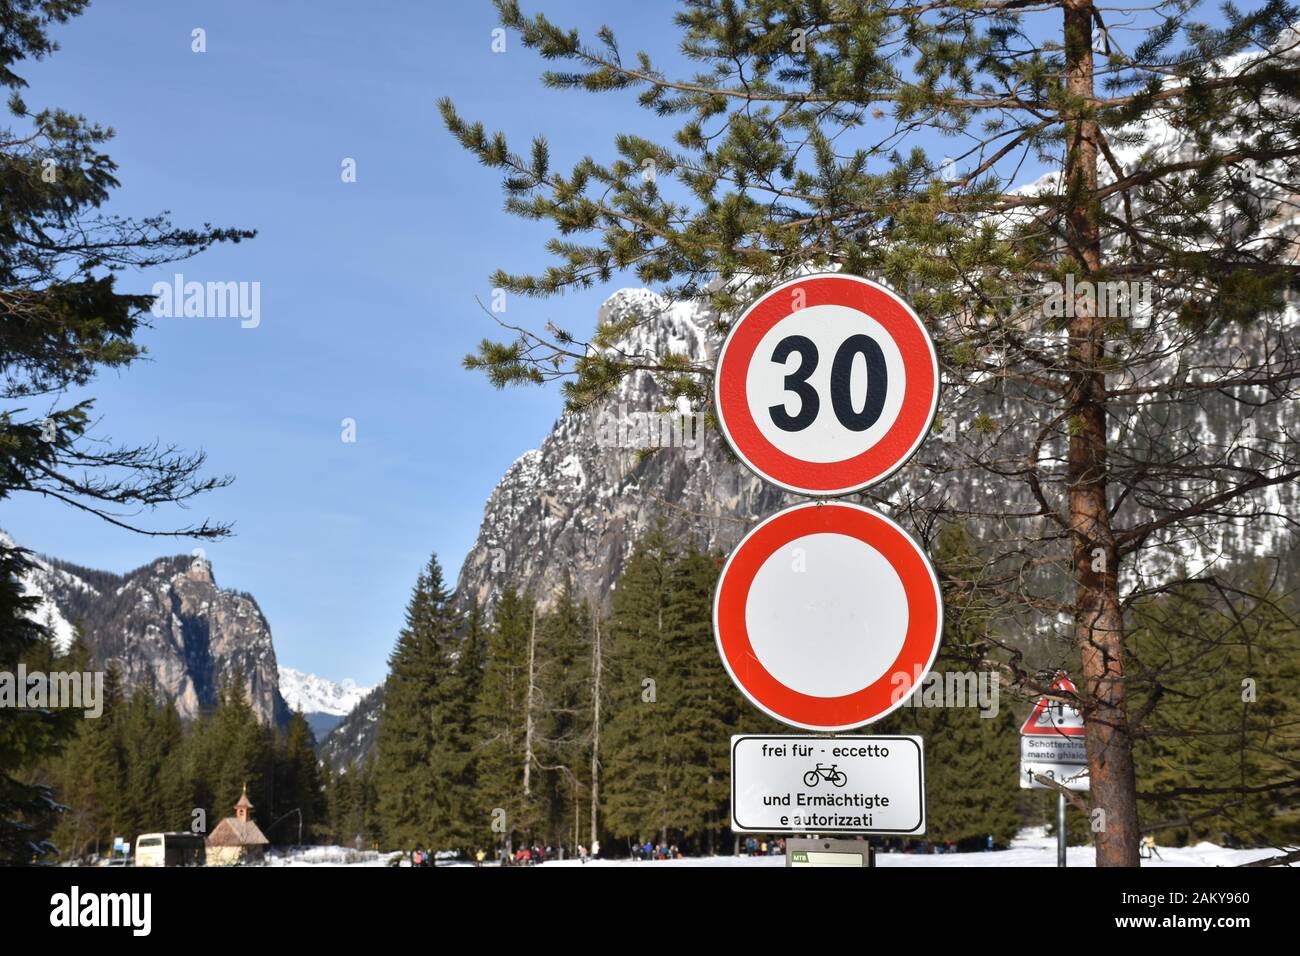 Südtirol, Langlaufen, Loipe, Langlaufloipe, Dolomiten, Verkehrszeichen, Schild Tafel, Geschwindigkeitsbegrenzung, Allgemeines Fahrverbot, km/h, Geschw Stock Photo